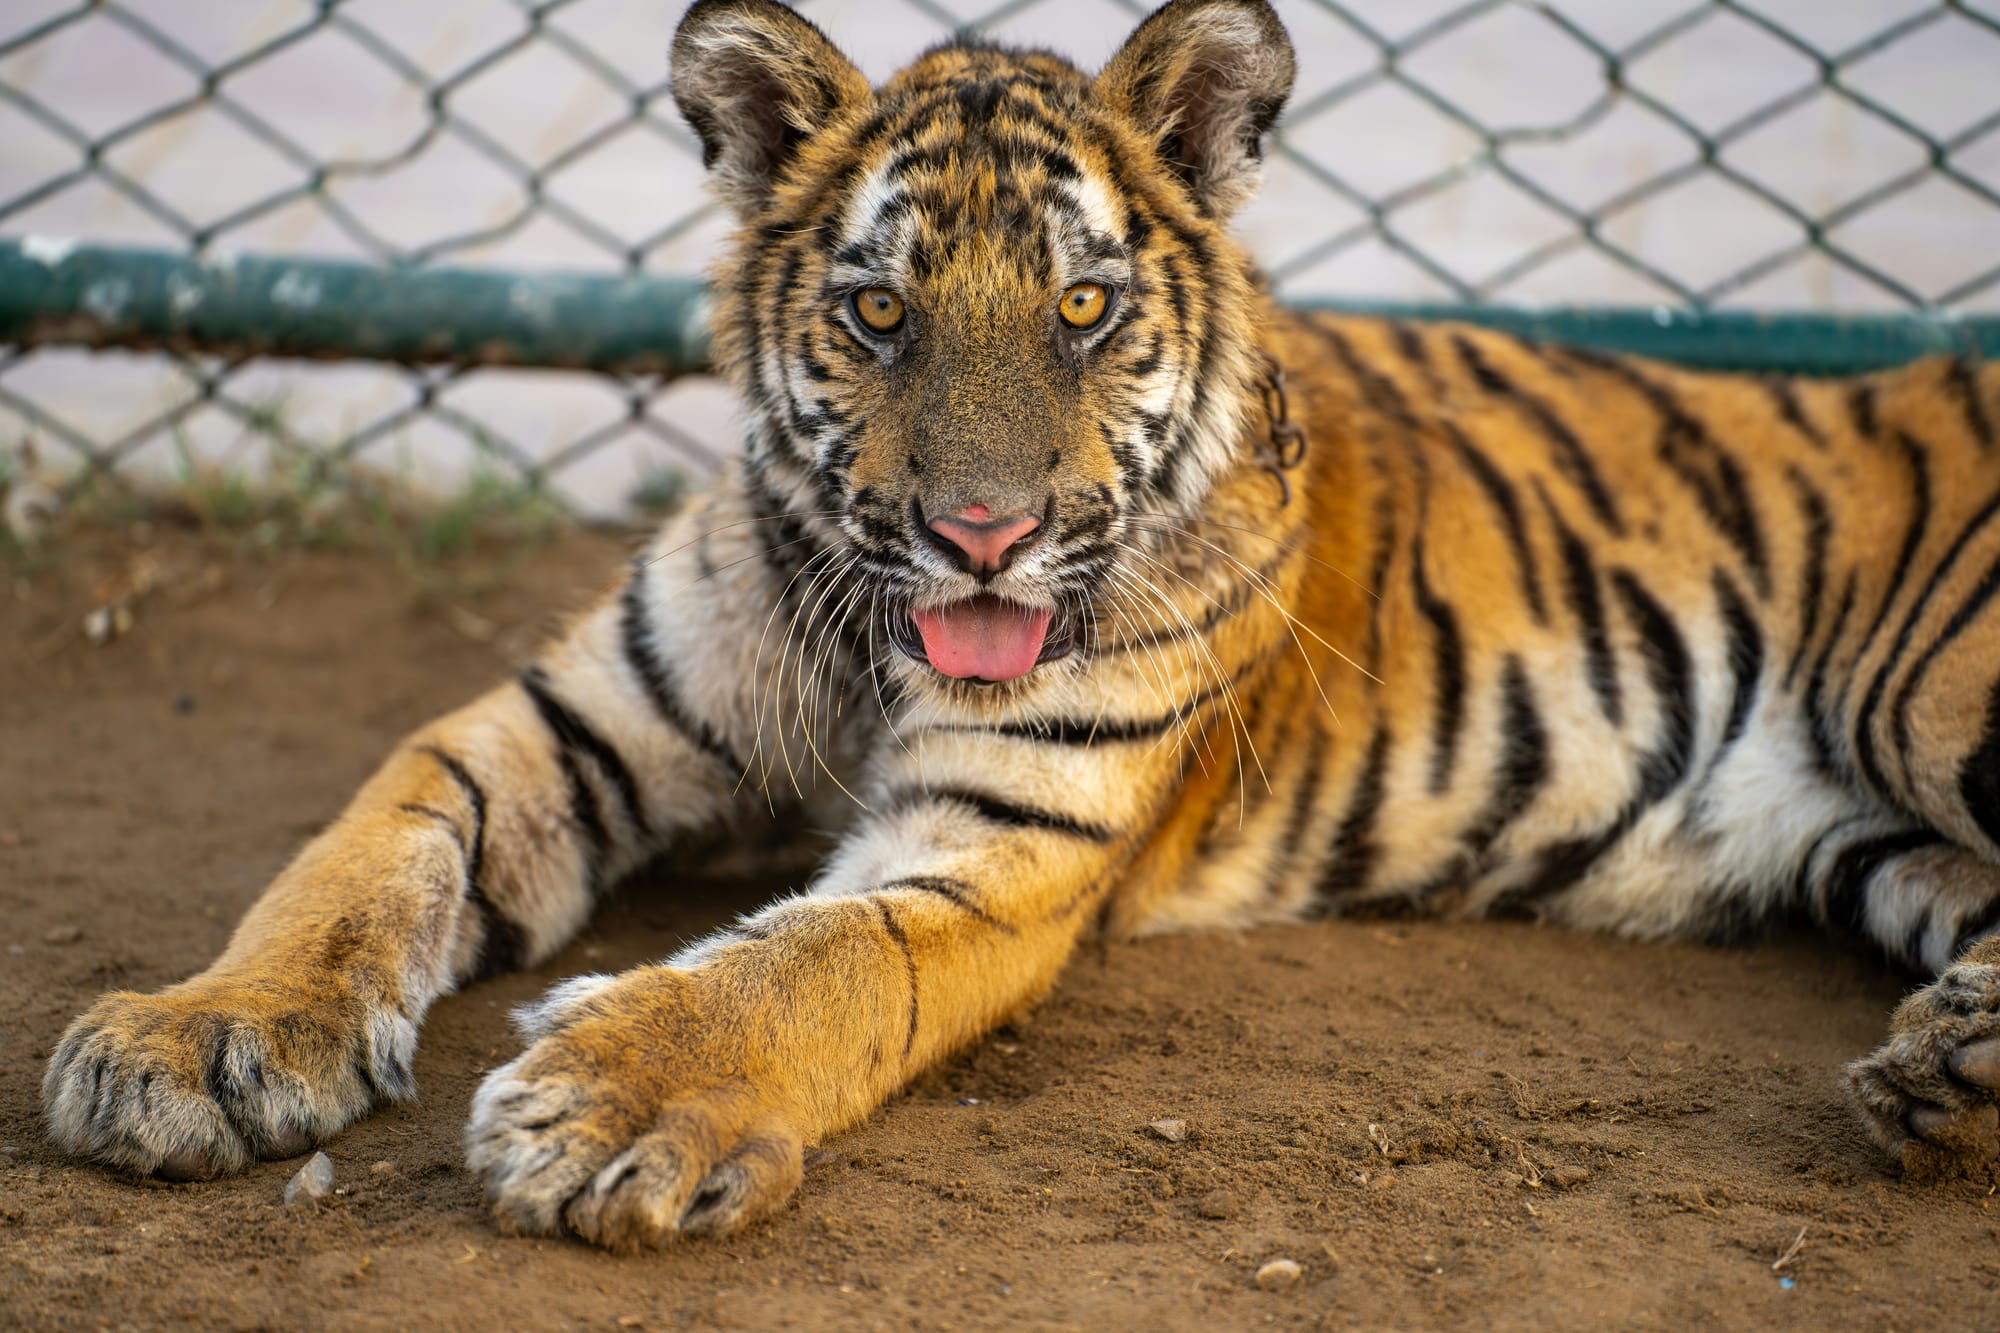 A Tiger at the Big Cat Sanctuary